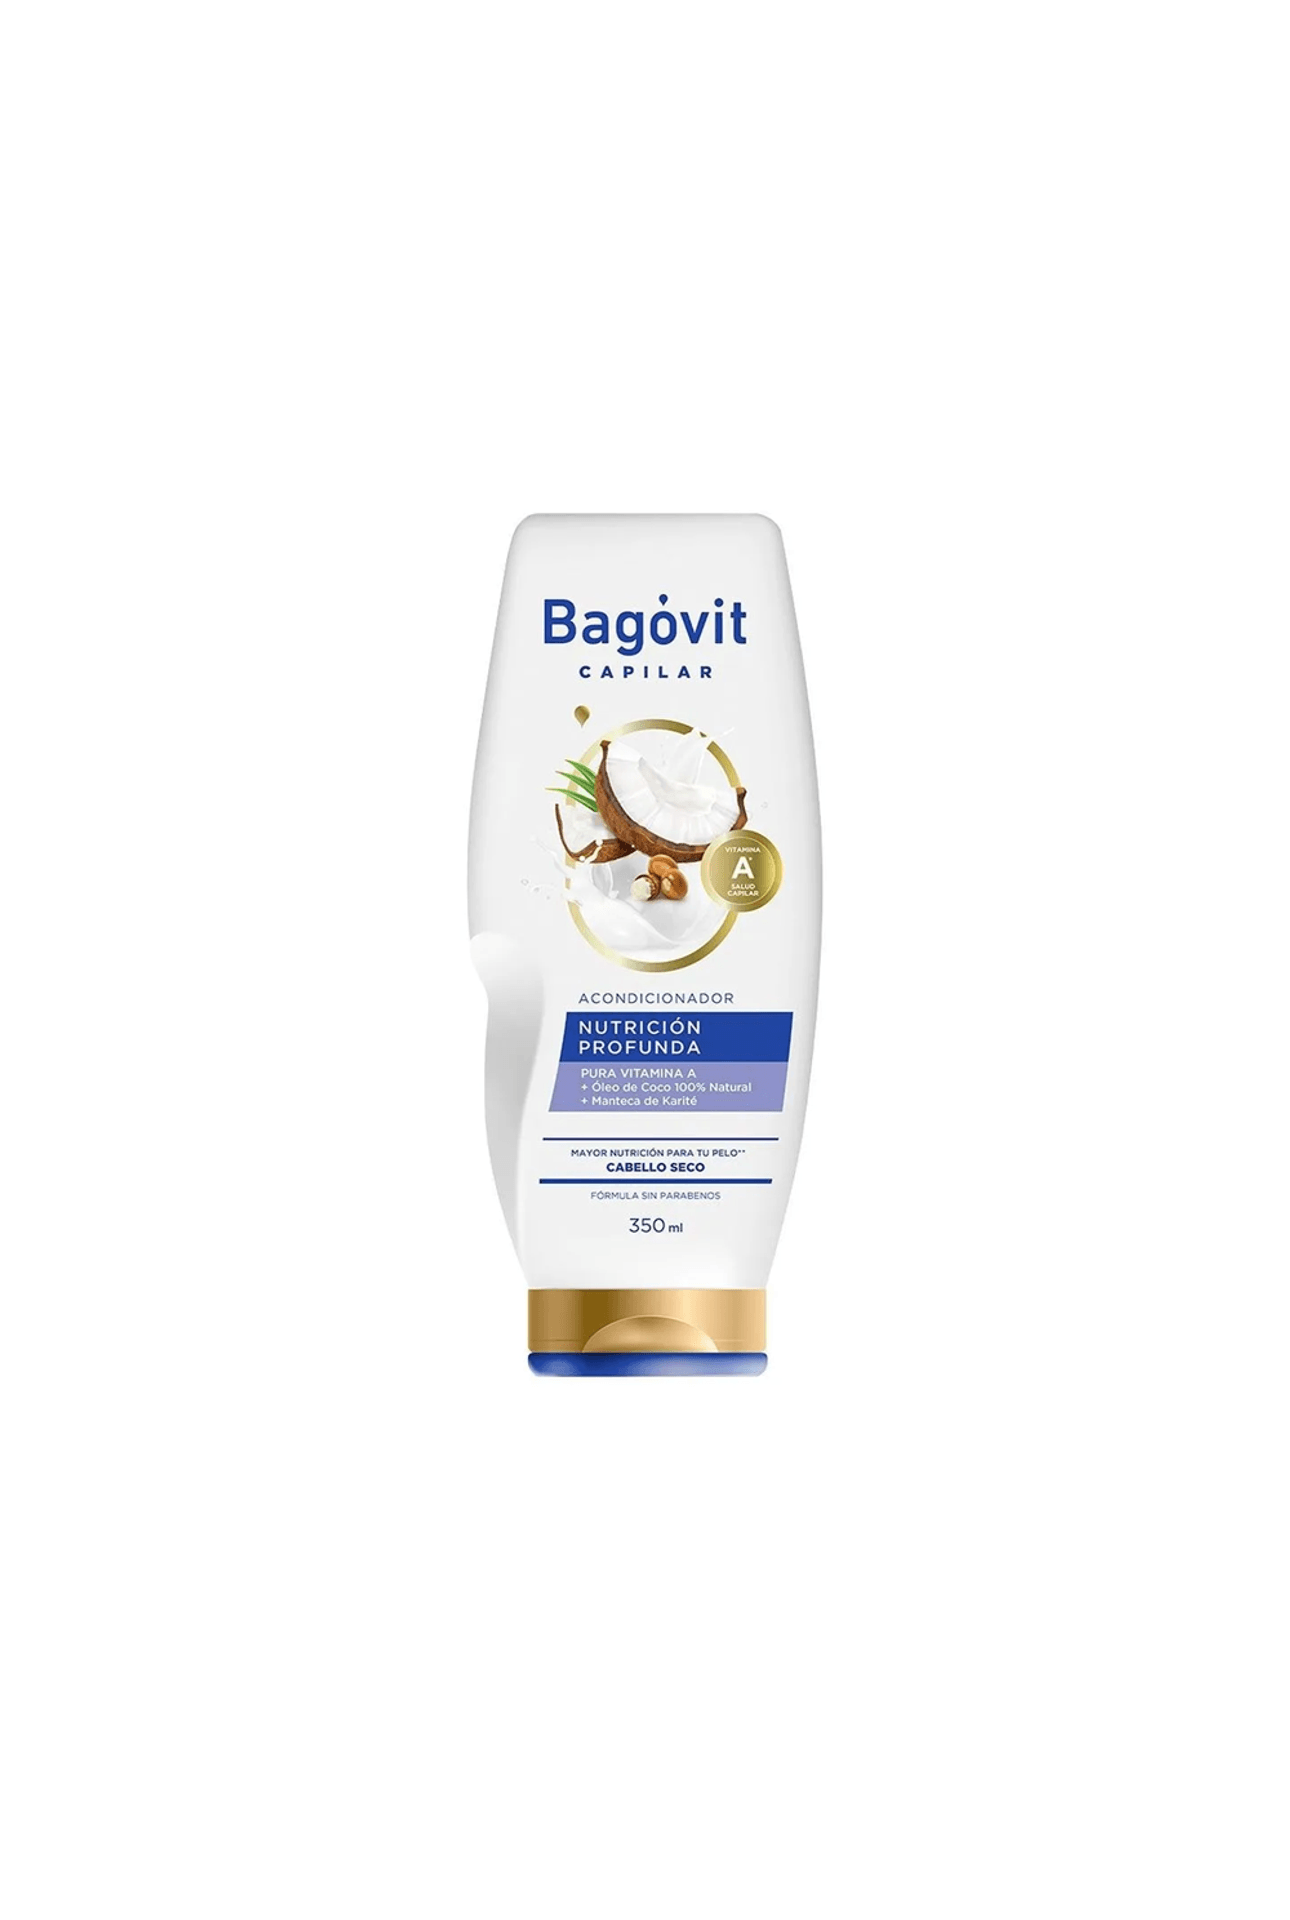 Bagovit-Acondicionador-Bagovit-Nutricion-Profunda-x-350-Ml-7790375269739_img1